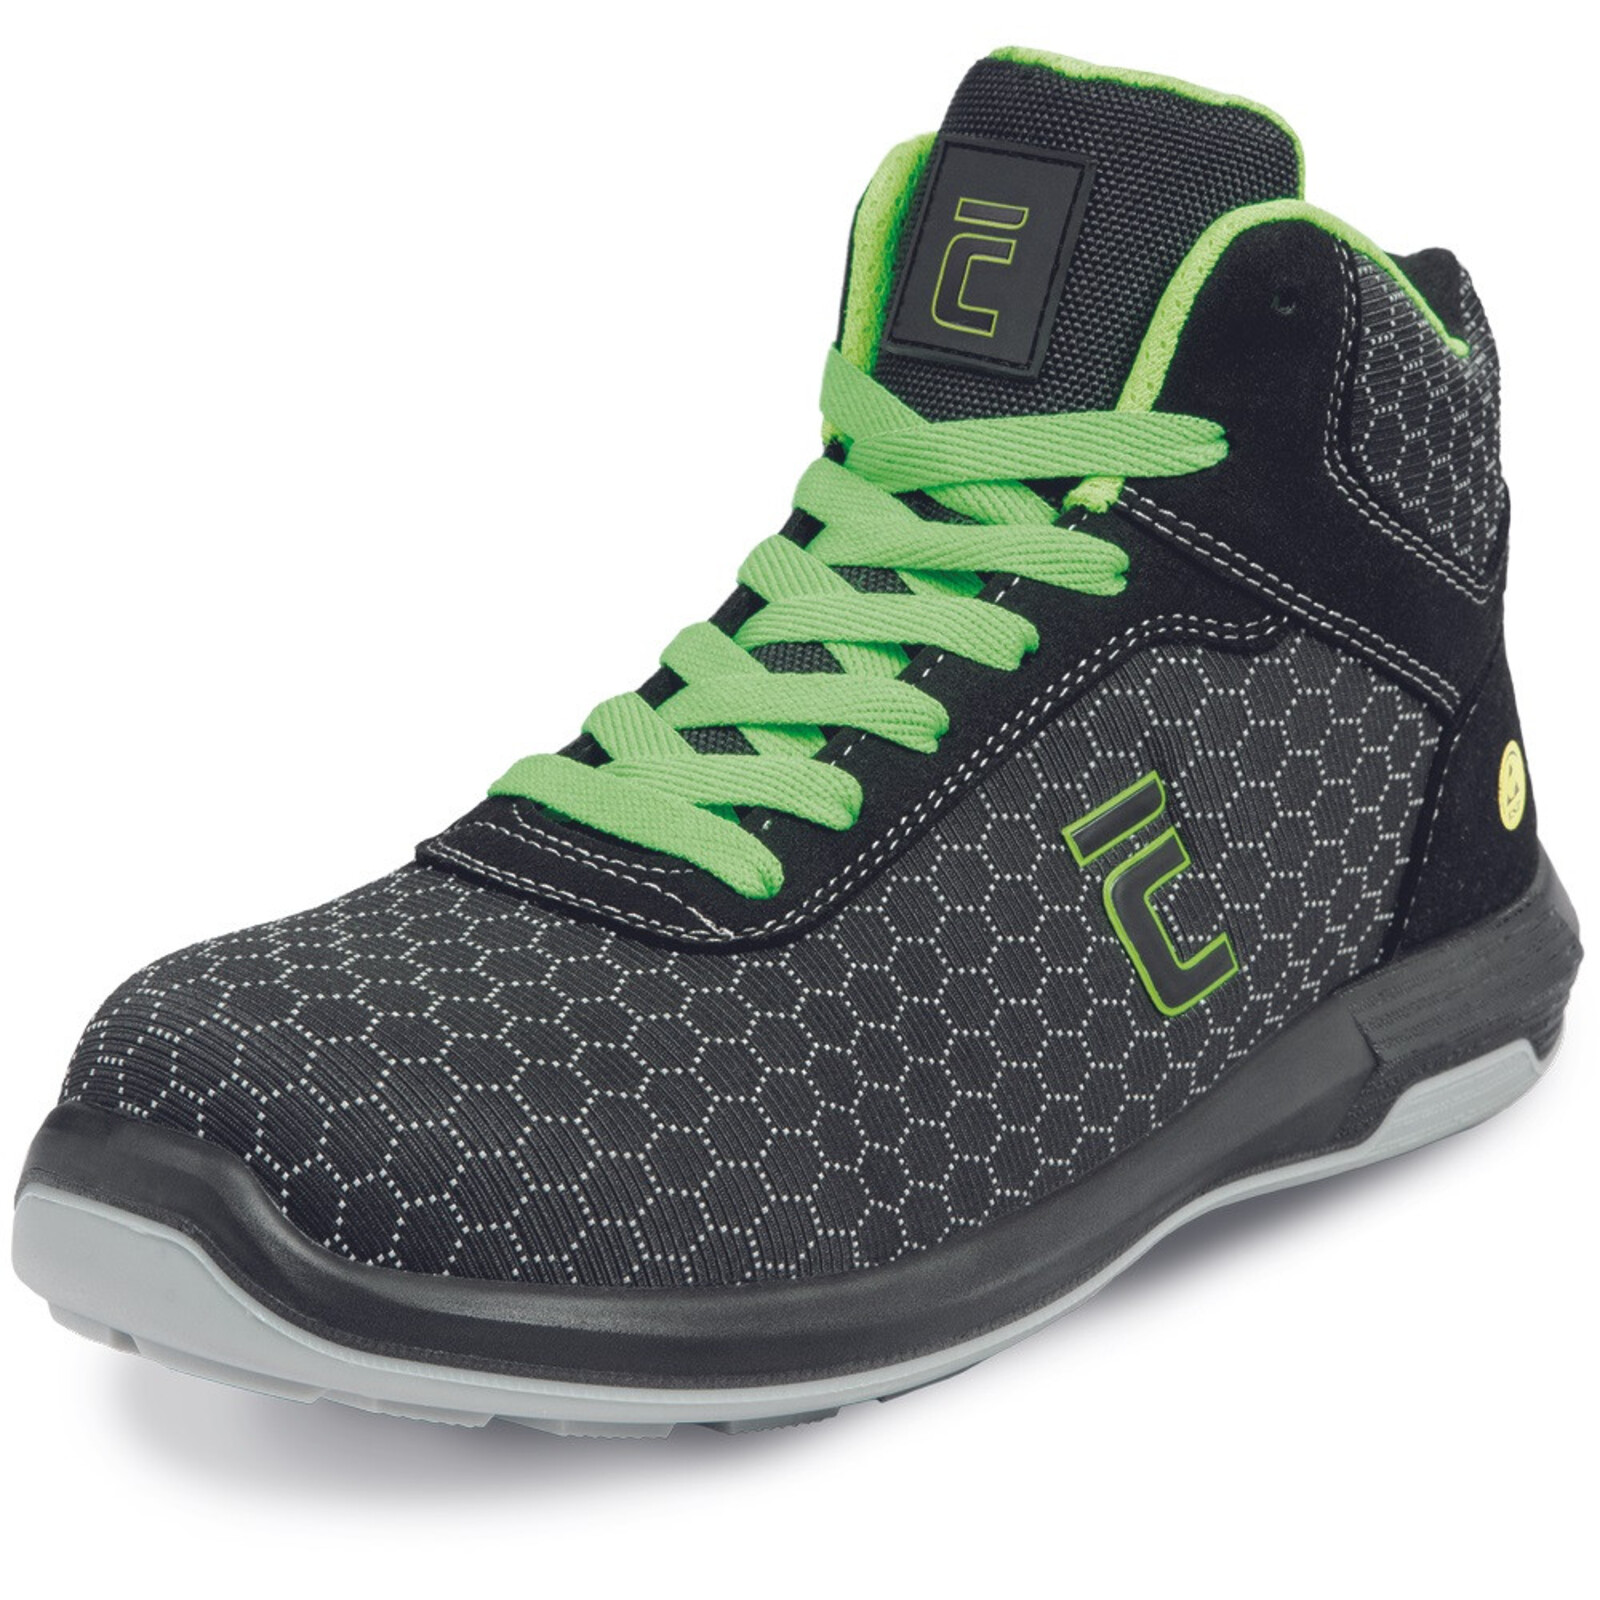 Bezpečnostná členková obuv Cerva Uttendorf MF ESD S3S SR - veľkosť: 40, farba: čierna/zelená